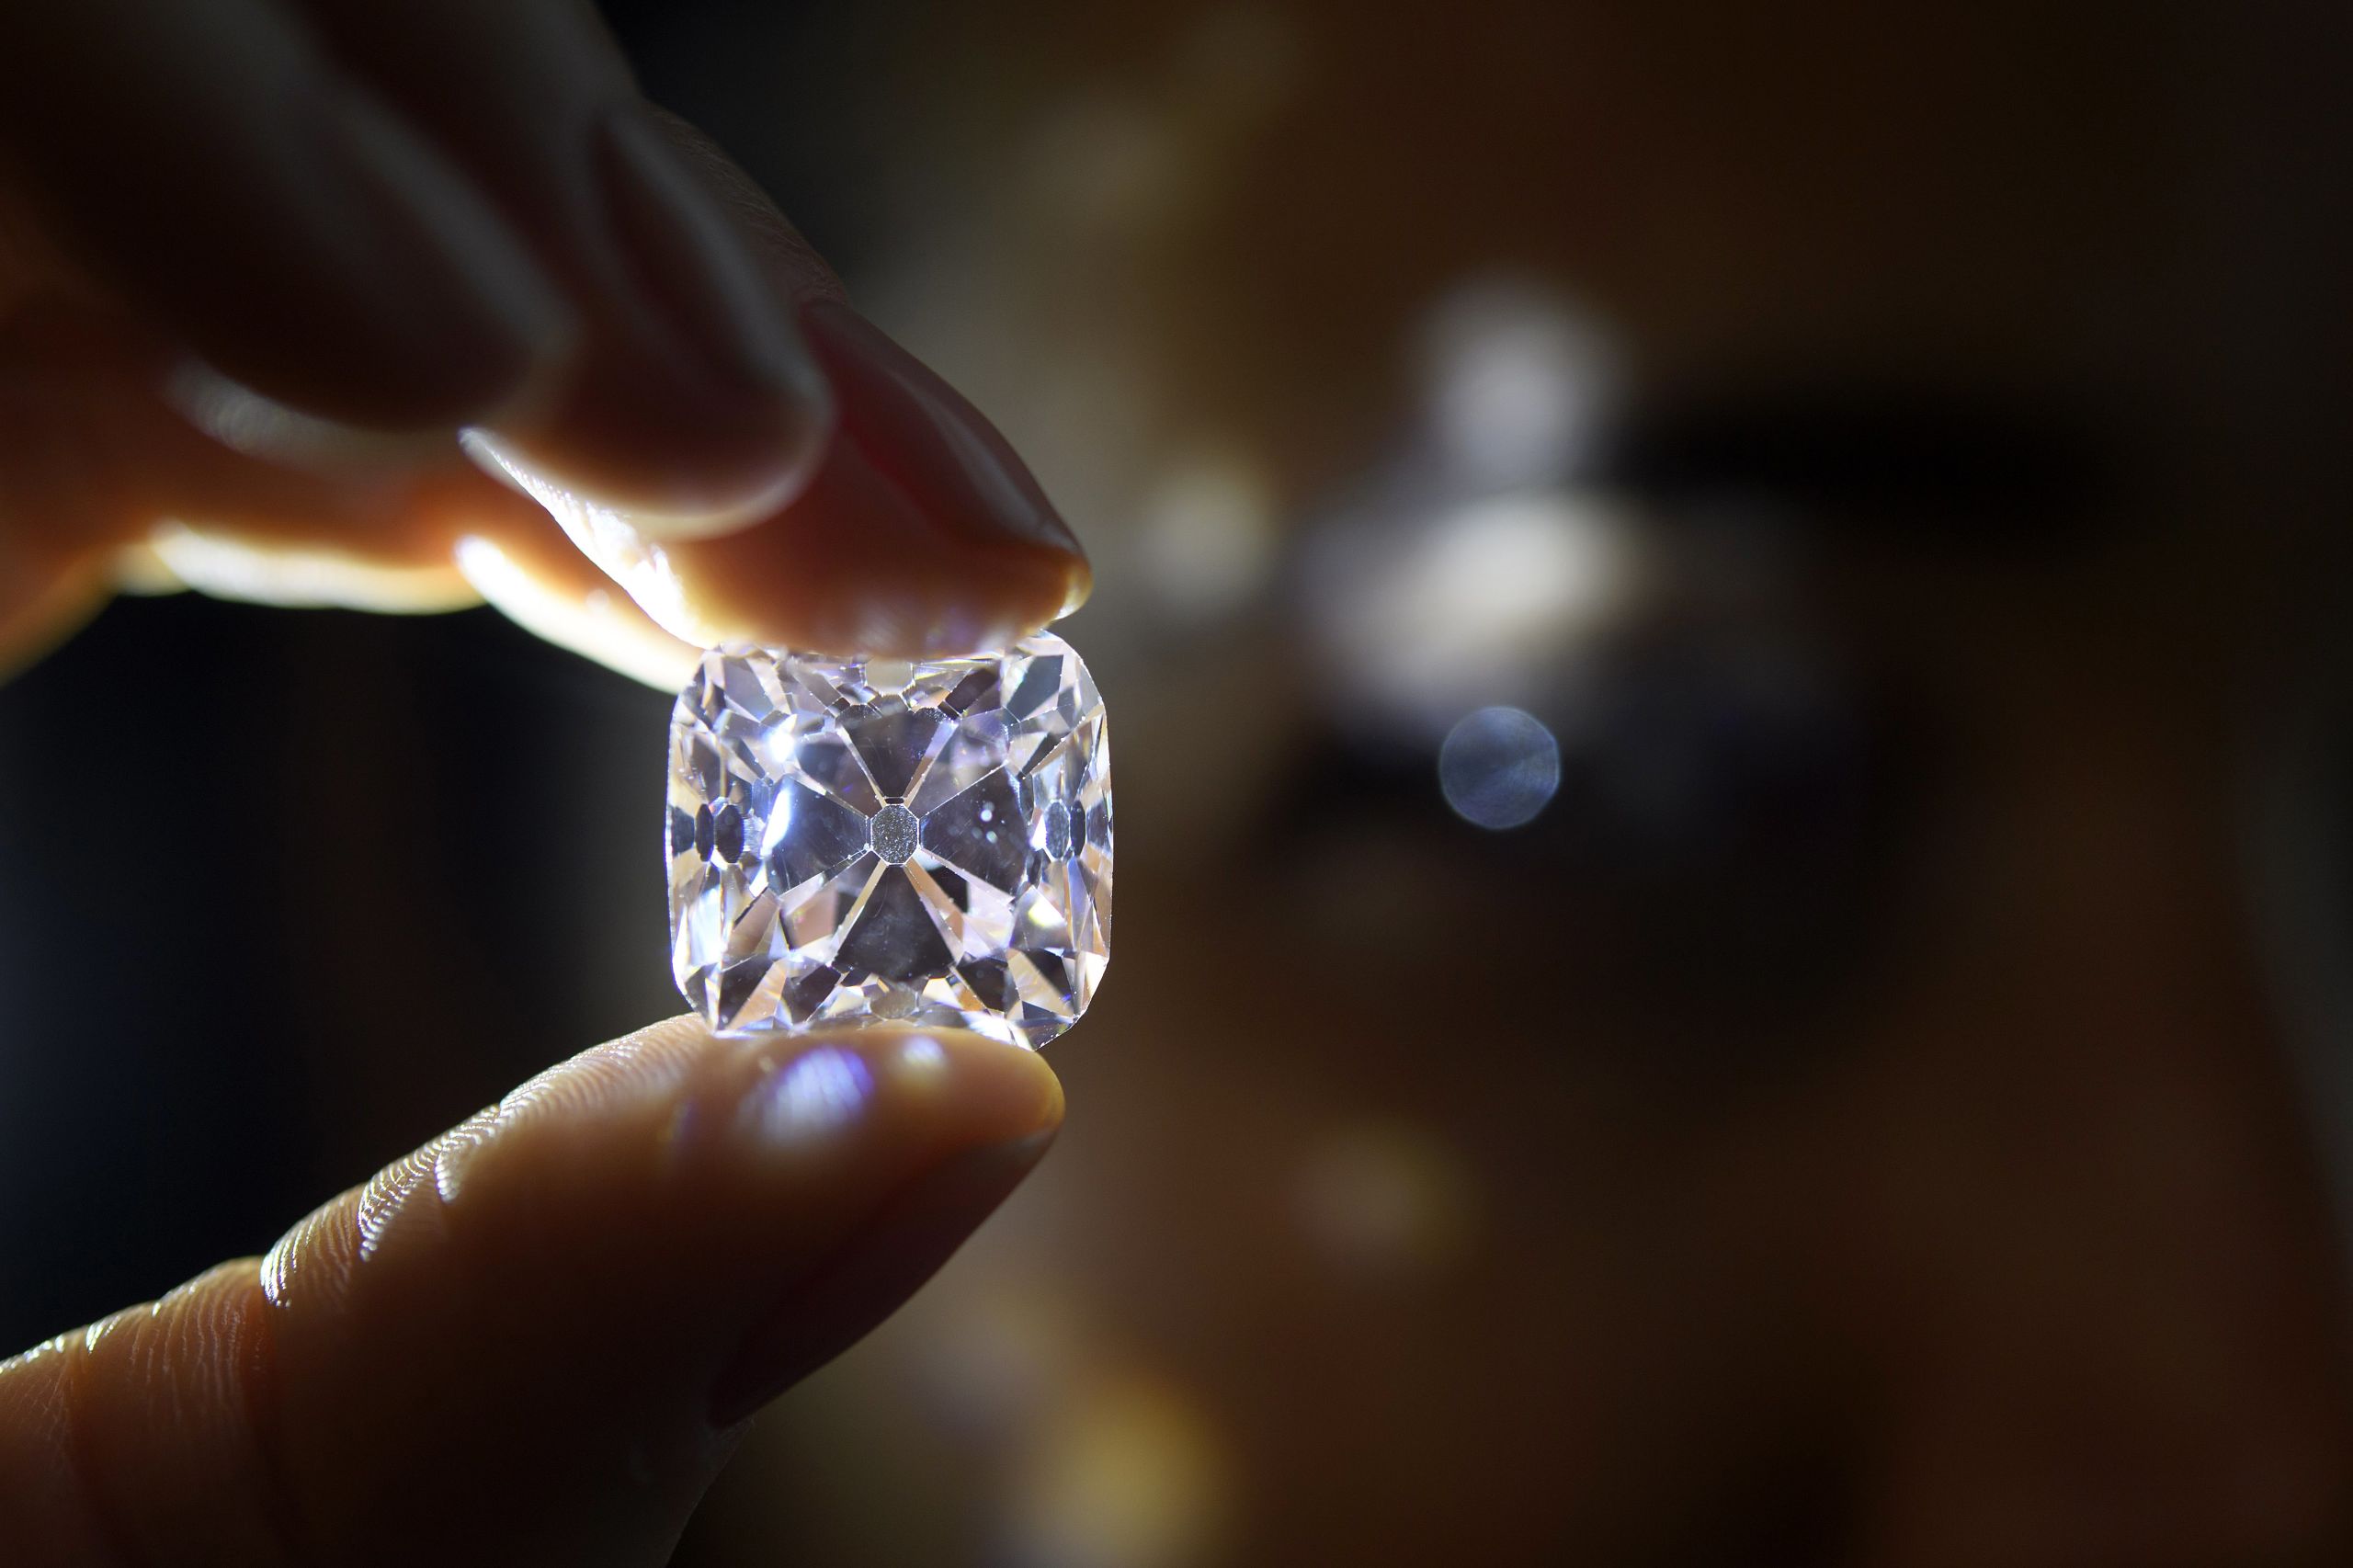 Geschat wordt dat de diamant tussen de 6 en 9 miljoen dollar op zal brengen.